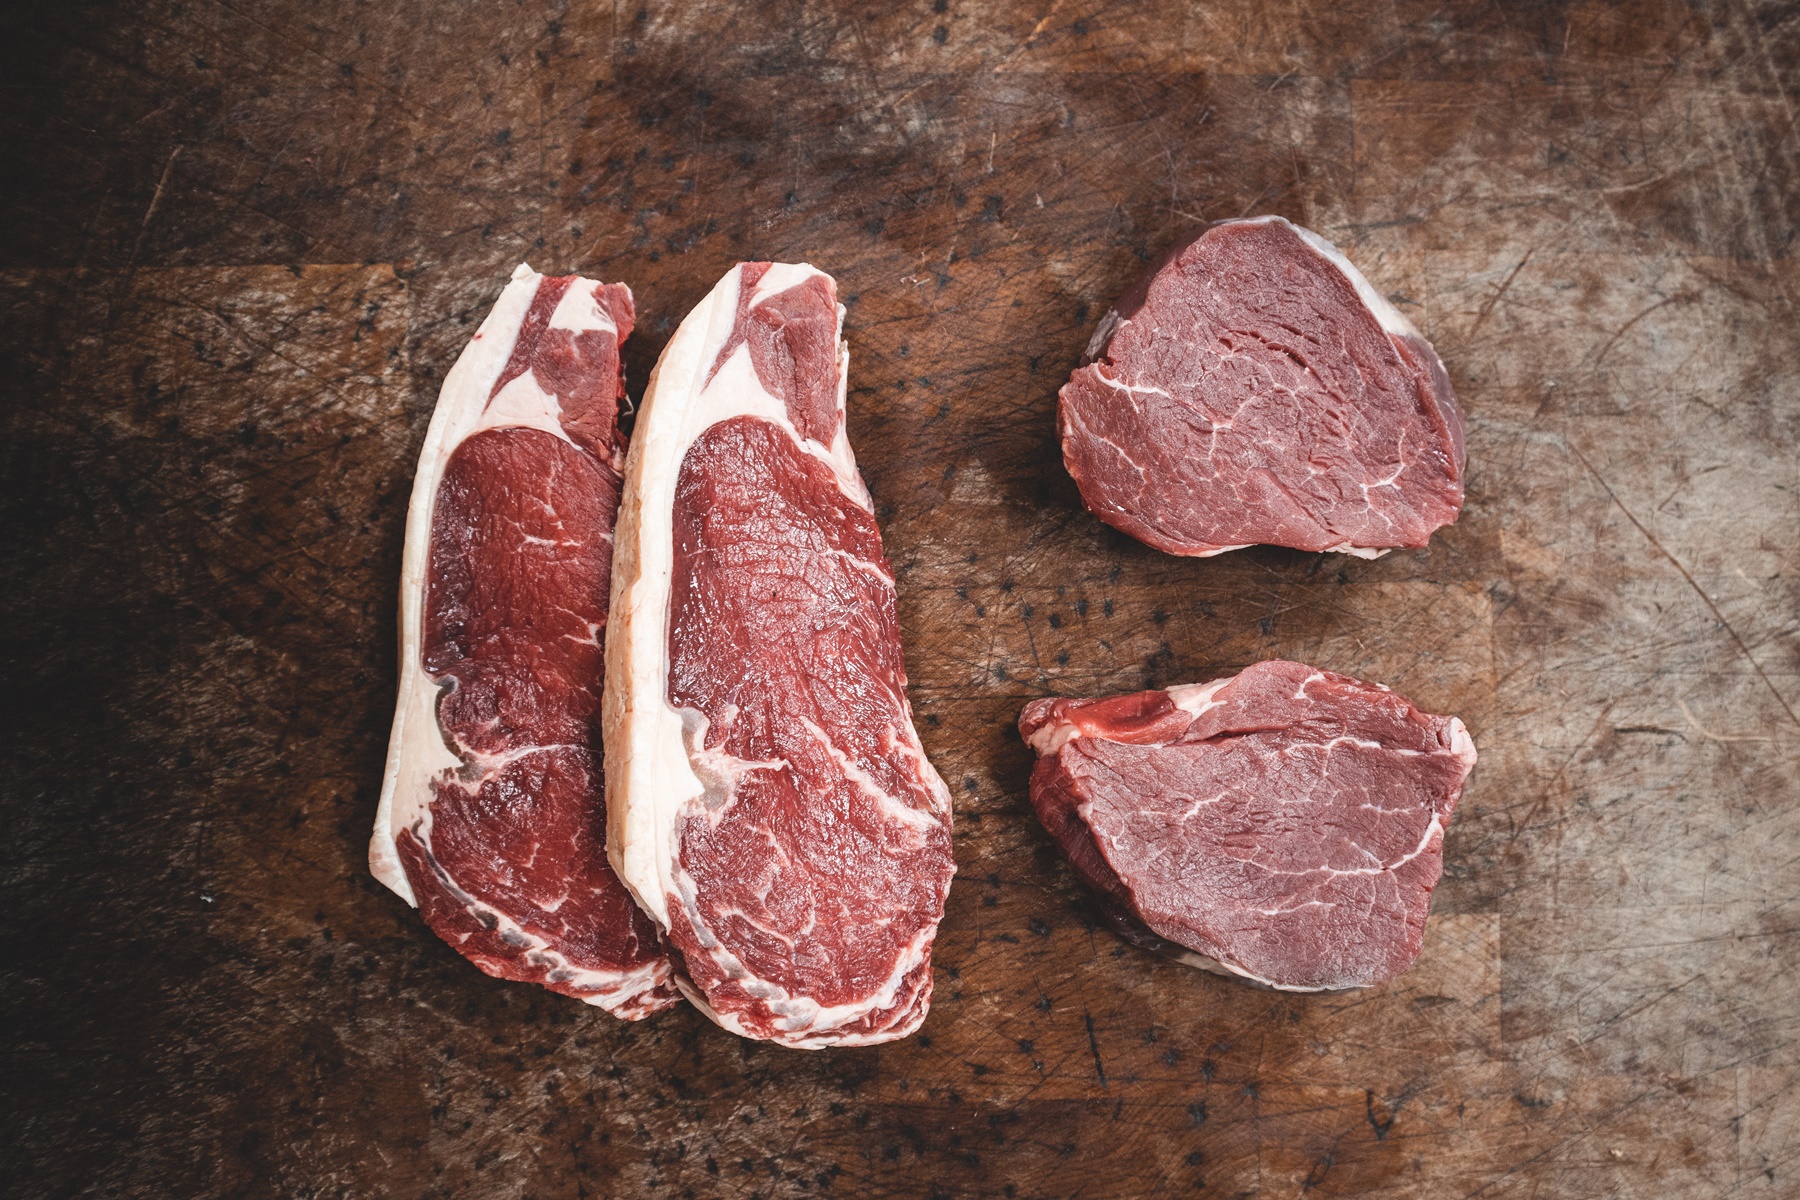 Πόσο καιρό αντέχει το κρέας στην κατάψυξη: Τι ισχύει για πουλερικά, αιγοπρόβατα και ψάρια